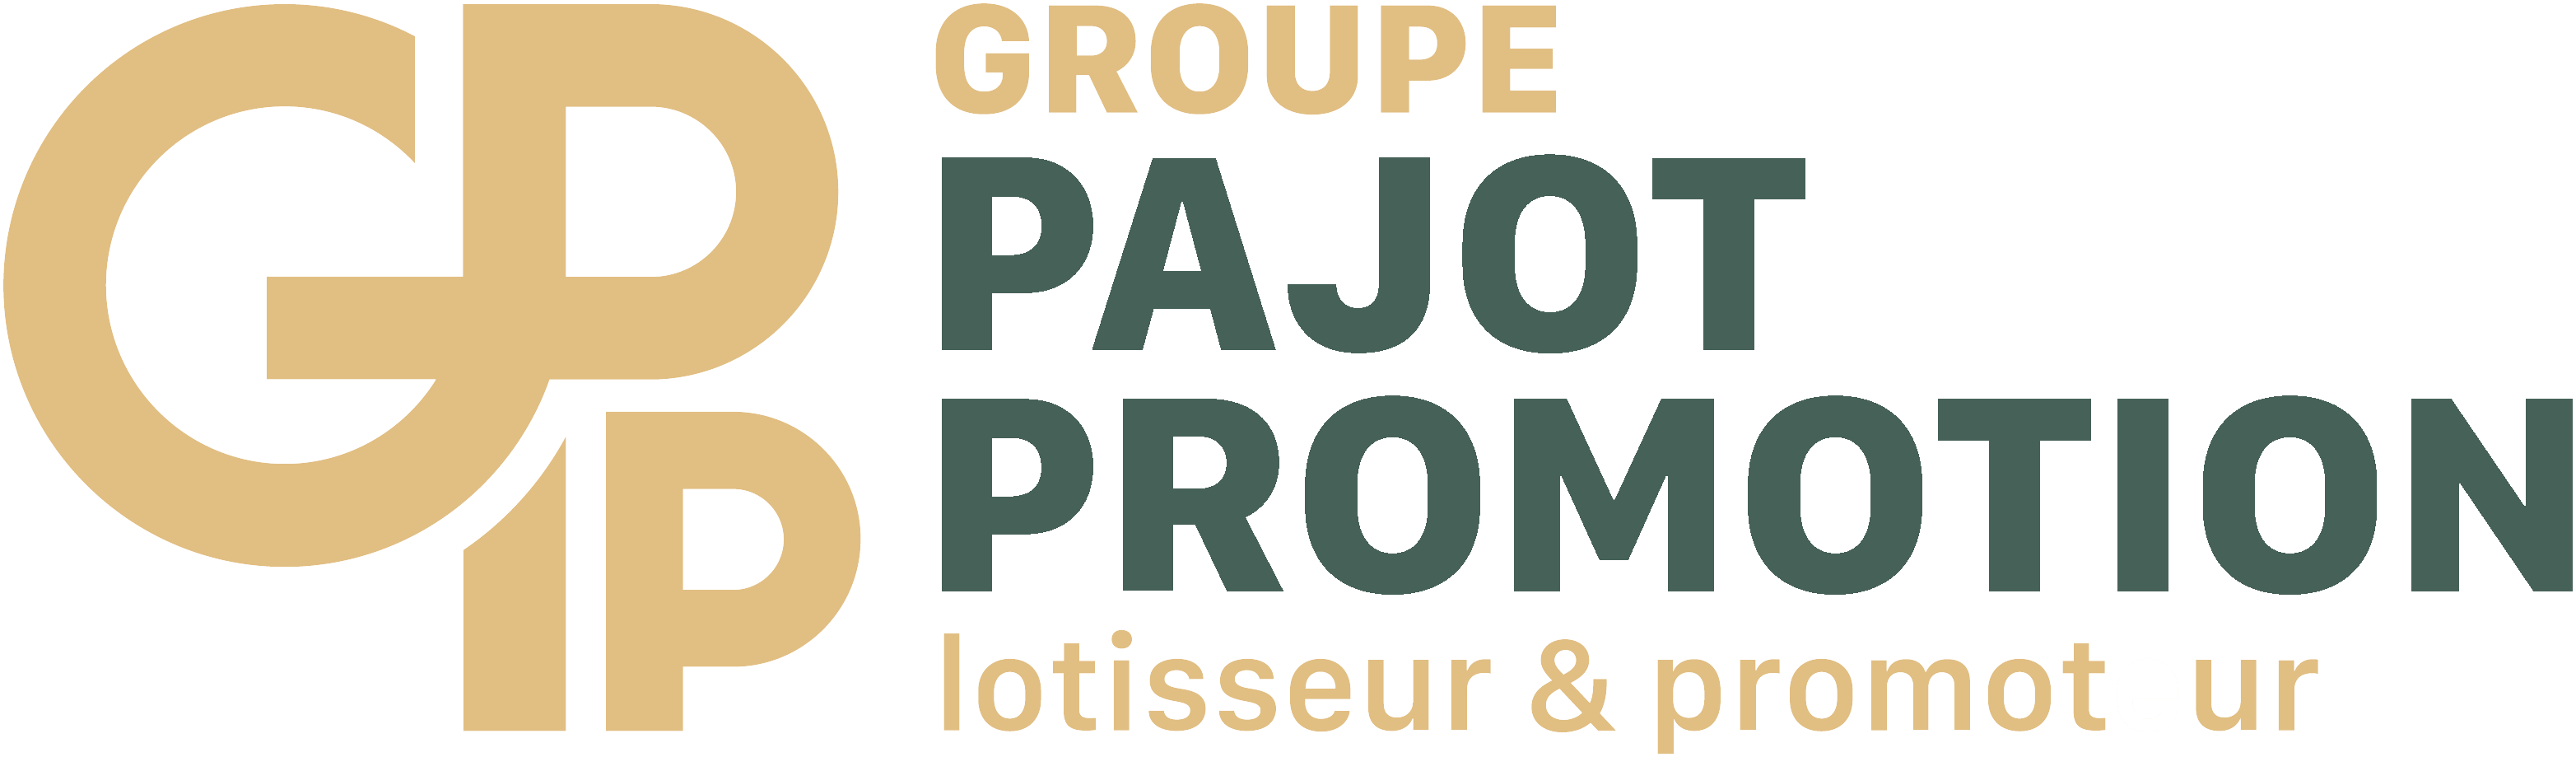 Pajot Promotion - Les Iris - 2ÈME